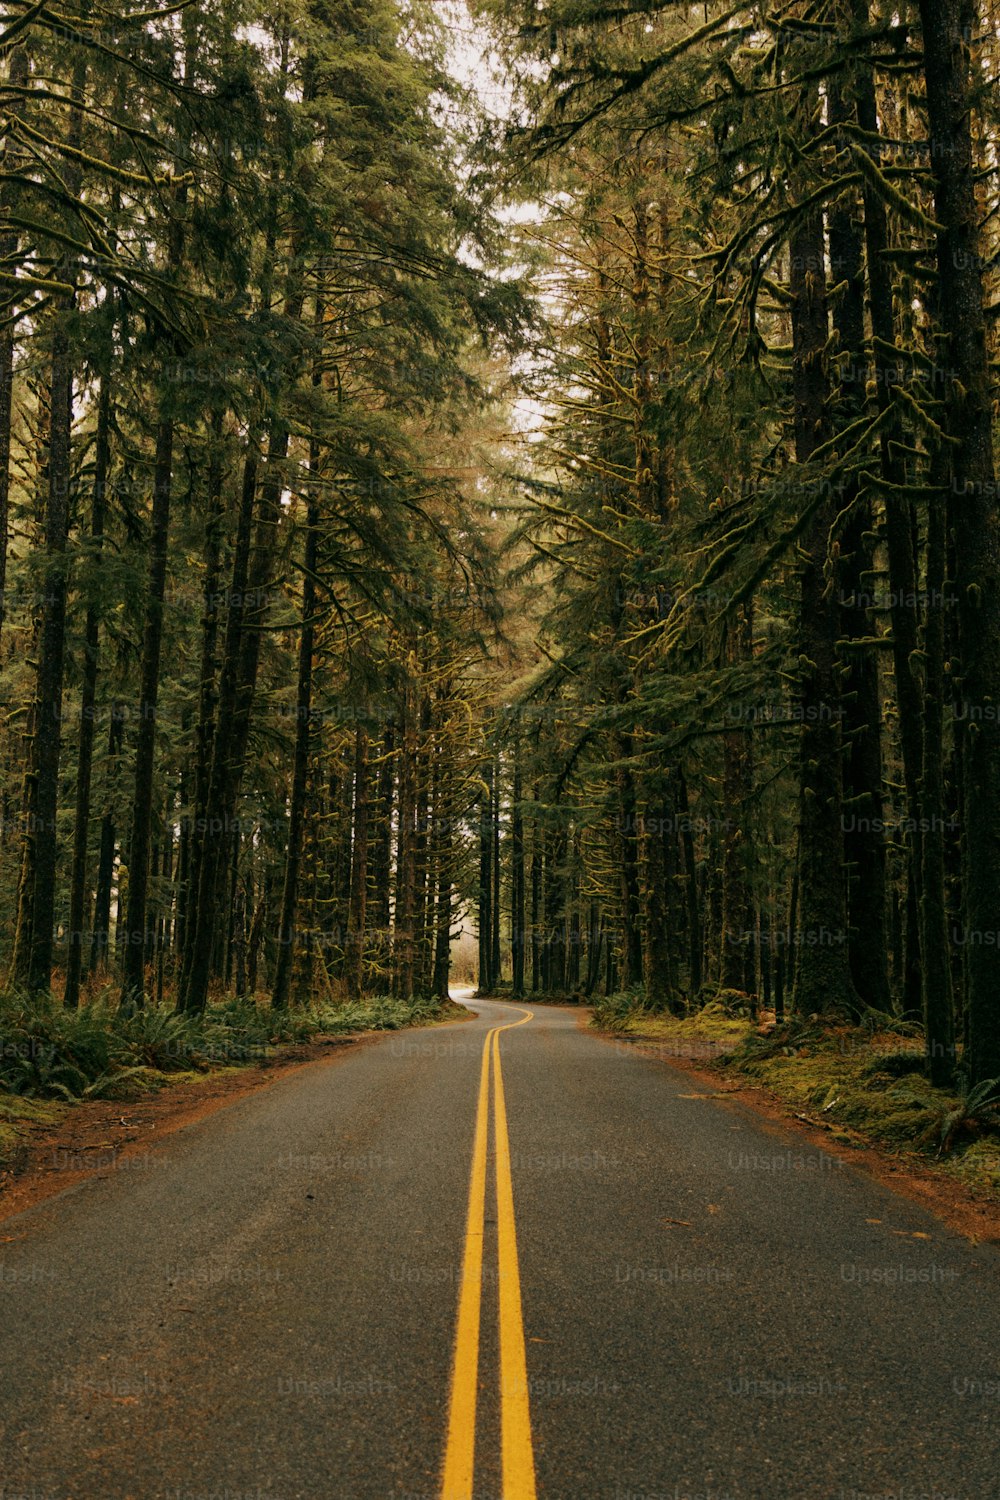 Une route au milieu d’une forêt bordée de grands arbres